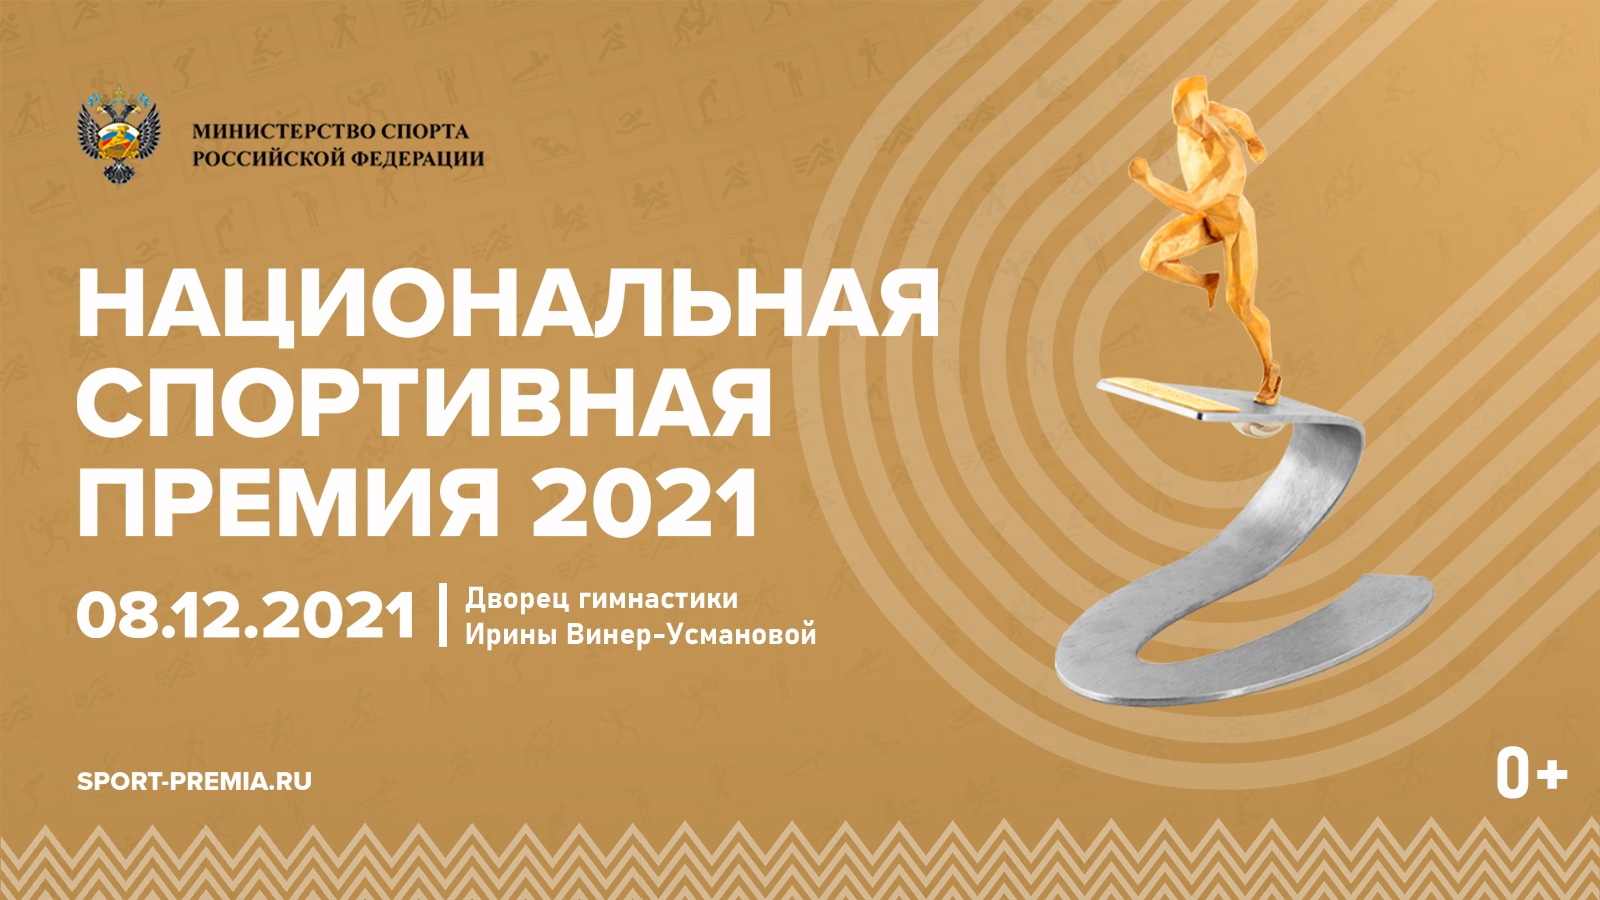 Итоги года: портал «ТВЕРИСПОРТ» завершил первый олимпийский цикл в тройке финалистов Национальной спортивной премии